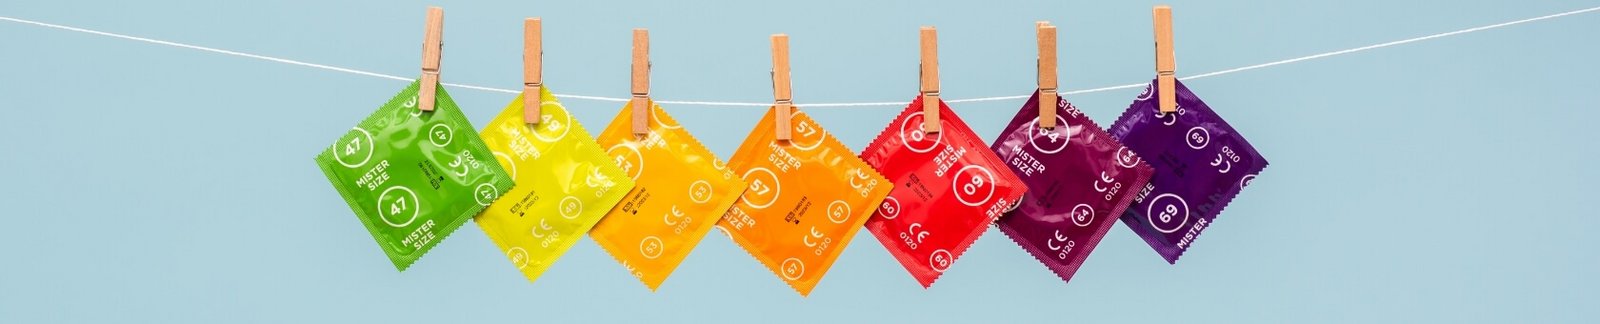 Mister Size-kondomer i forskellige størrelser på en linje